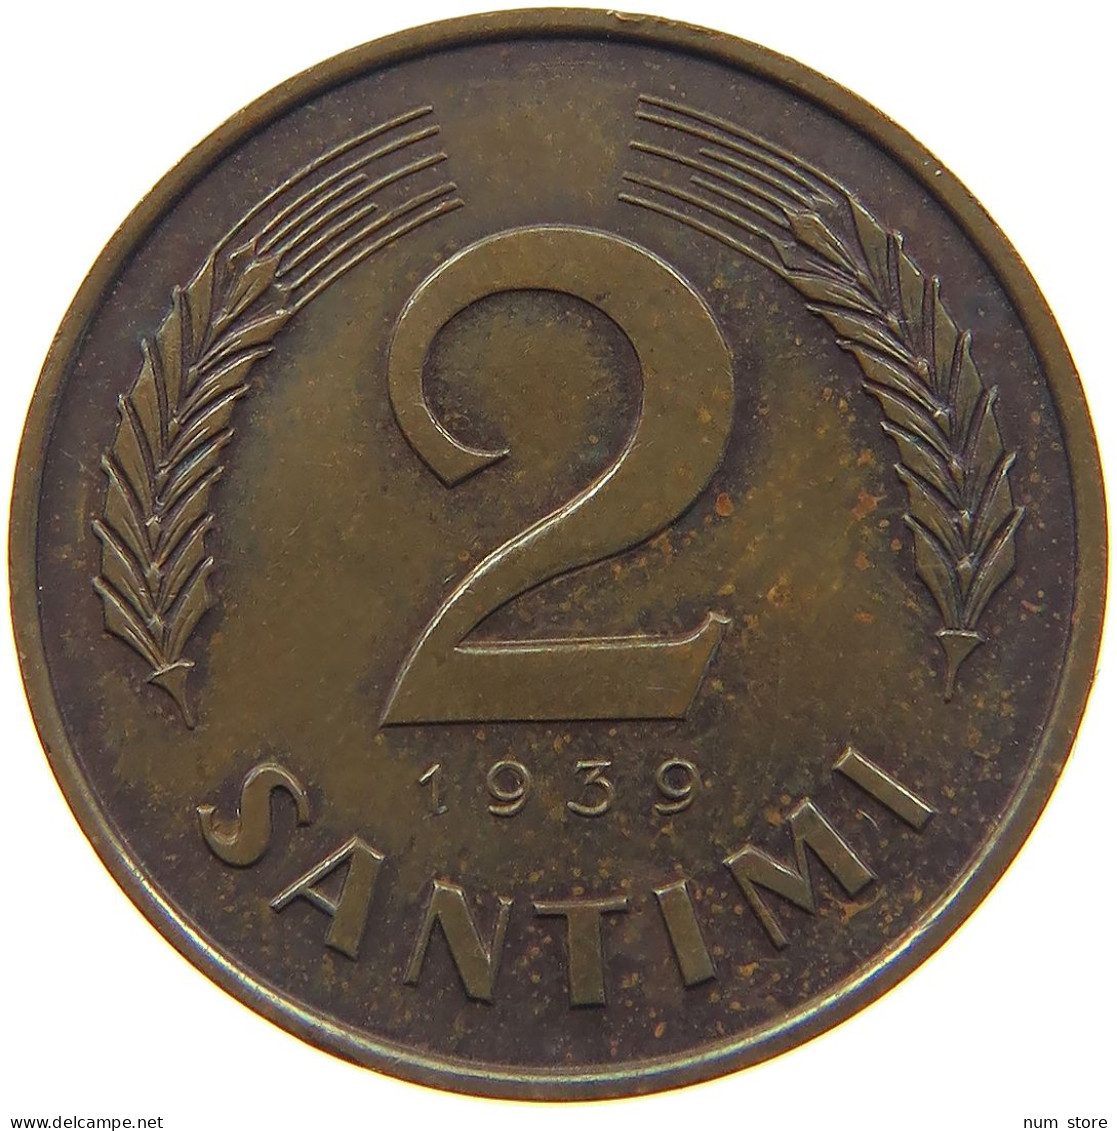 LATVIA 2 SANTIMI 1939  #MA 022613 - Lettland